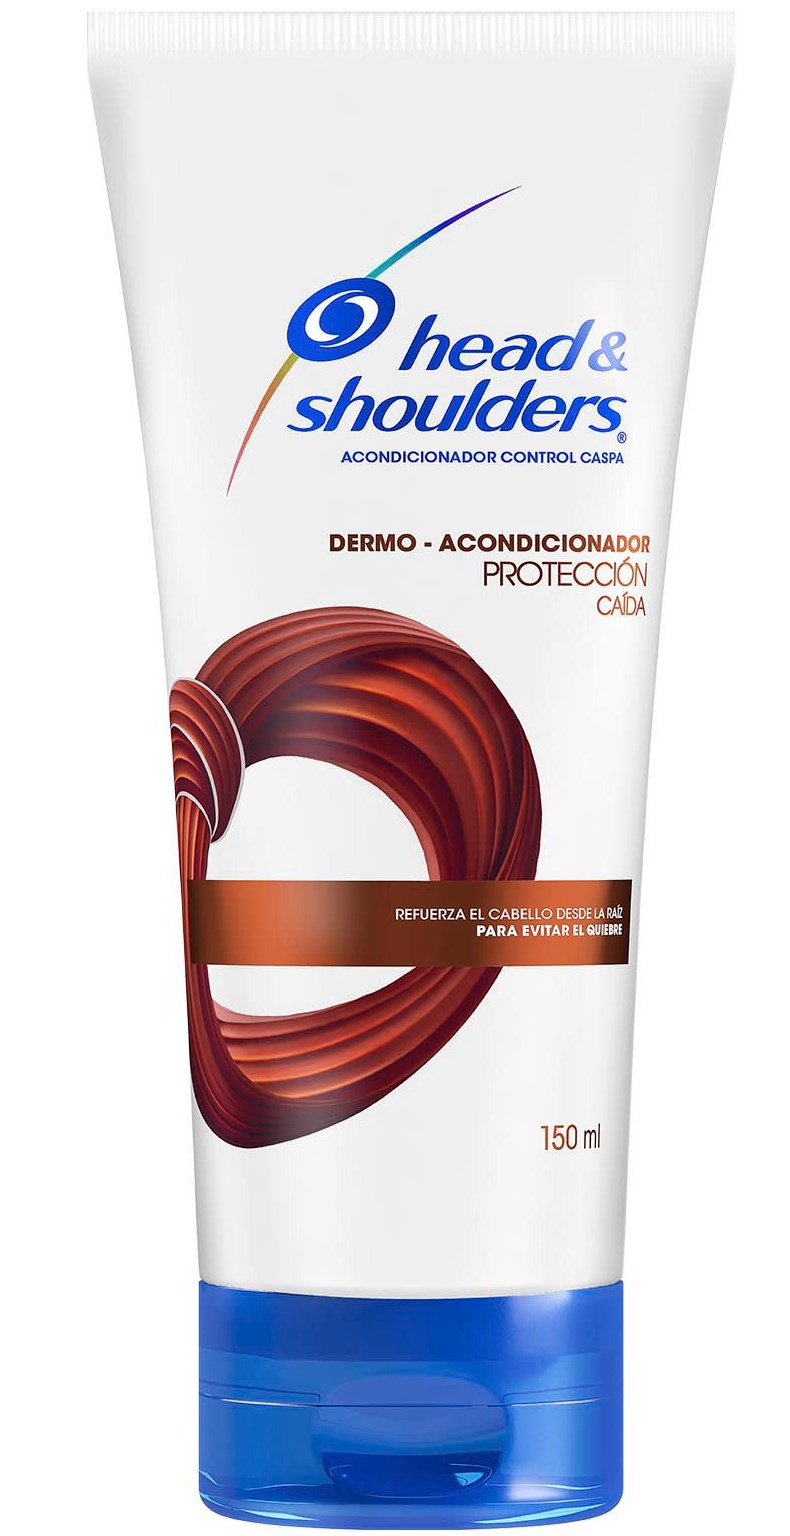 Head & Shoulders Dermo - Acondicionador Protección Caída